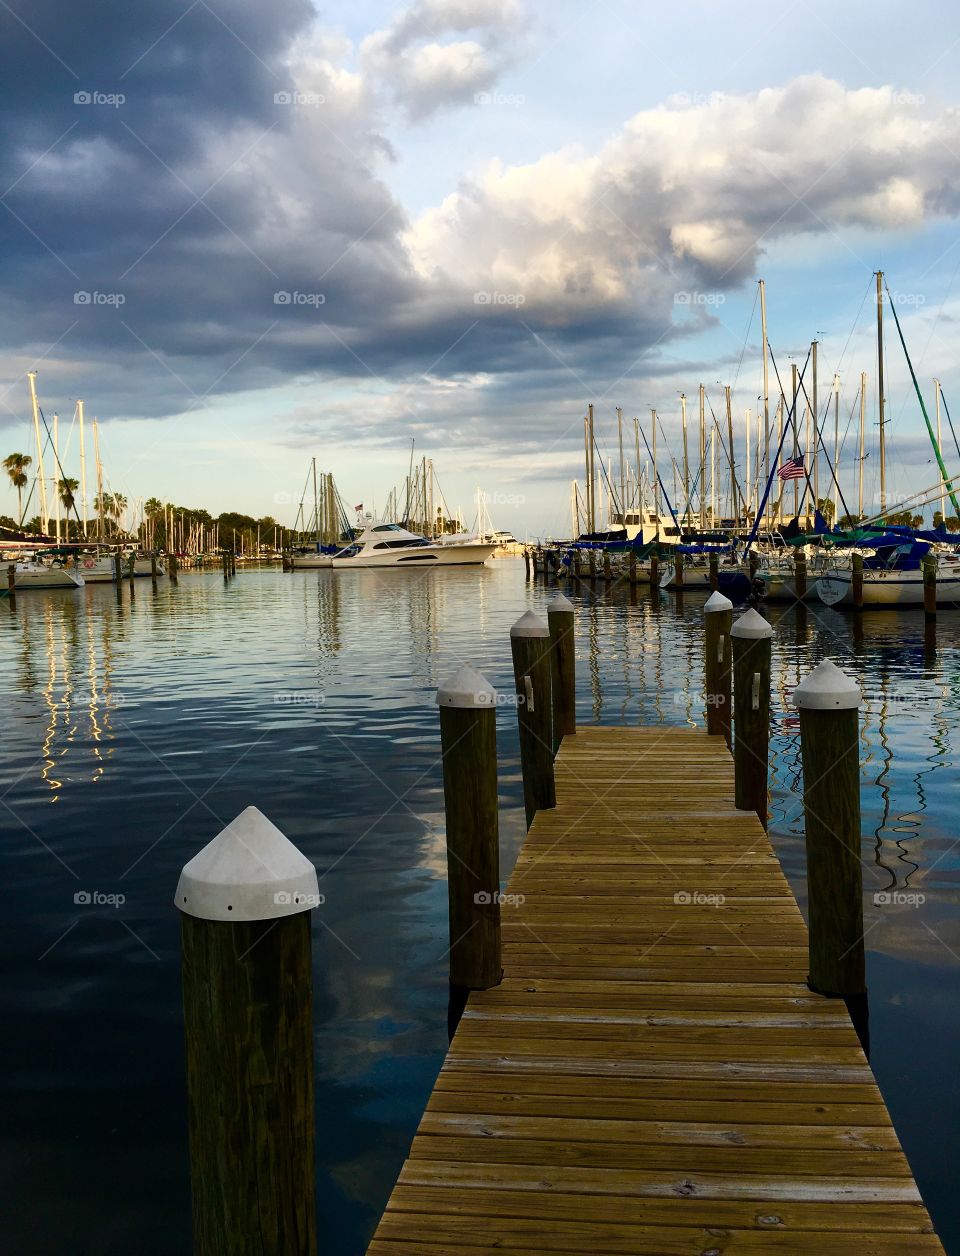 Marina, dock, boats and sailboats